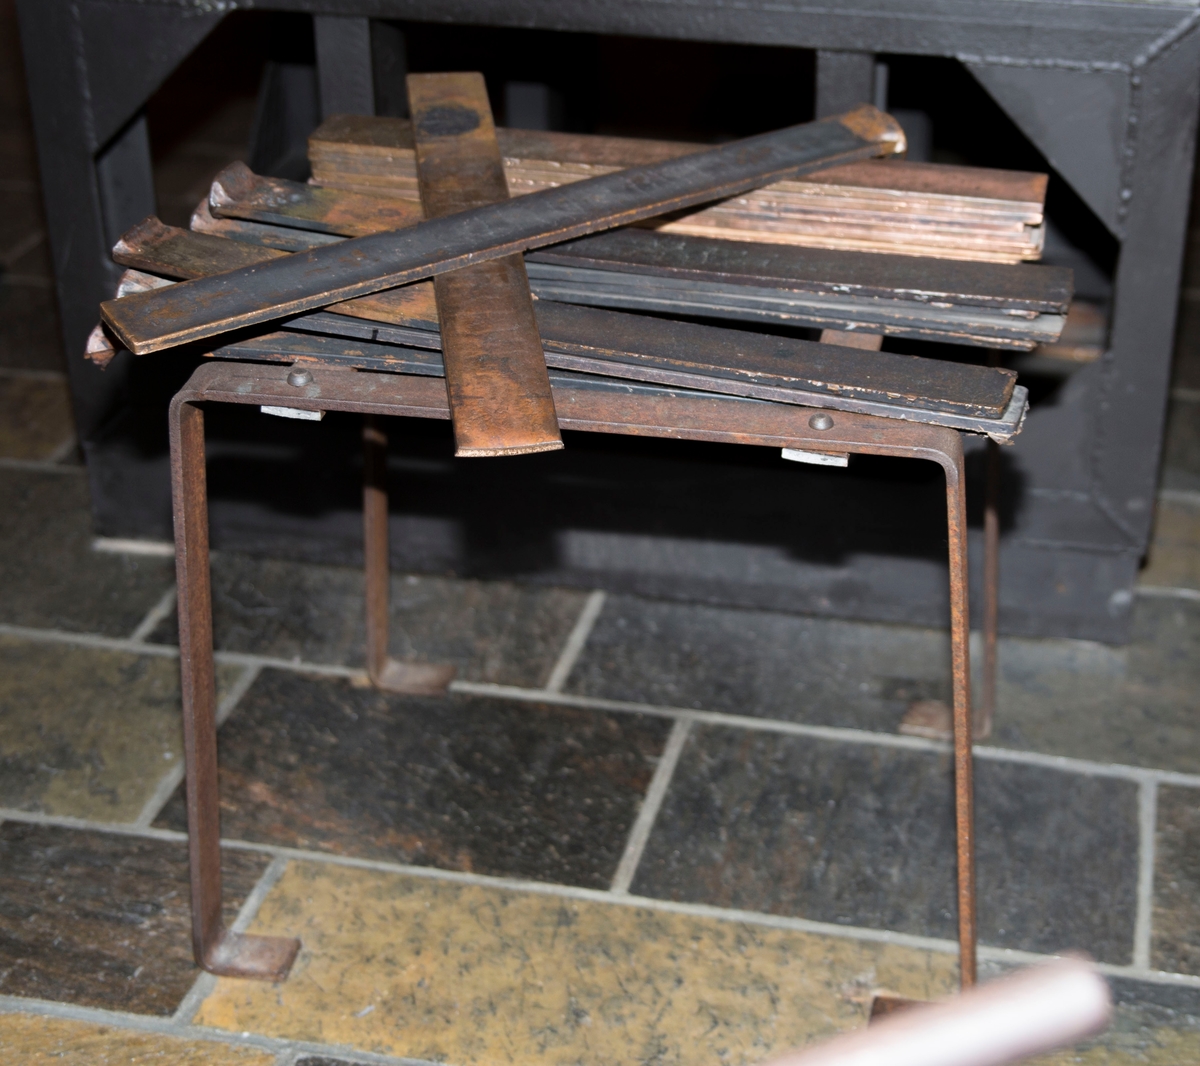 Flate jernplater montert sammen med stålnagler slik at de danner ett stativ med flat topp og fire bein. 15 teiner er montert på stativet.